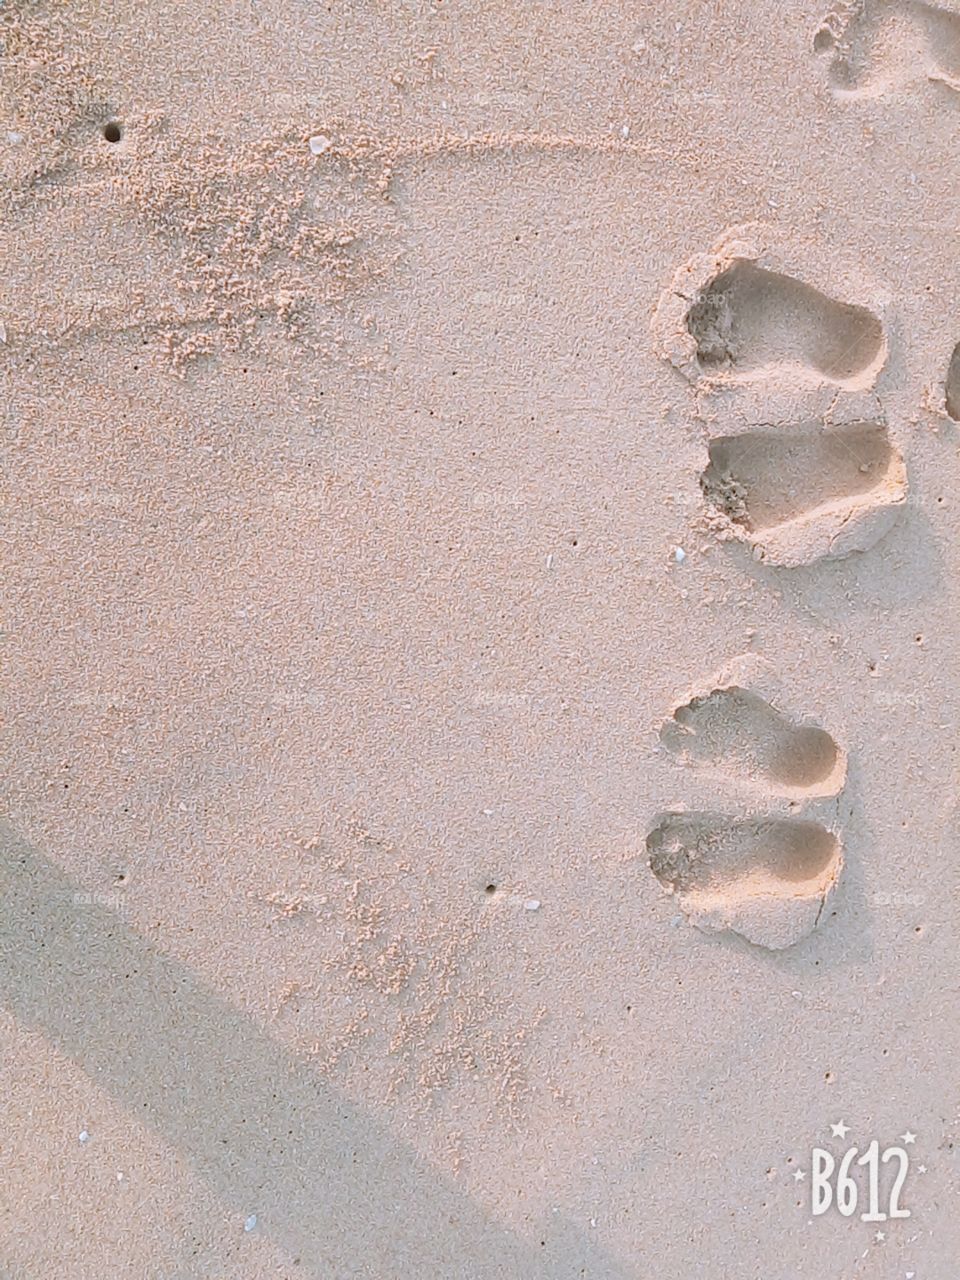 Foot print on sand